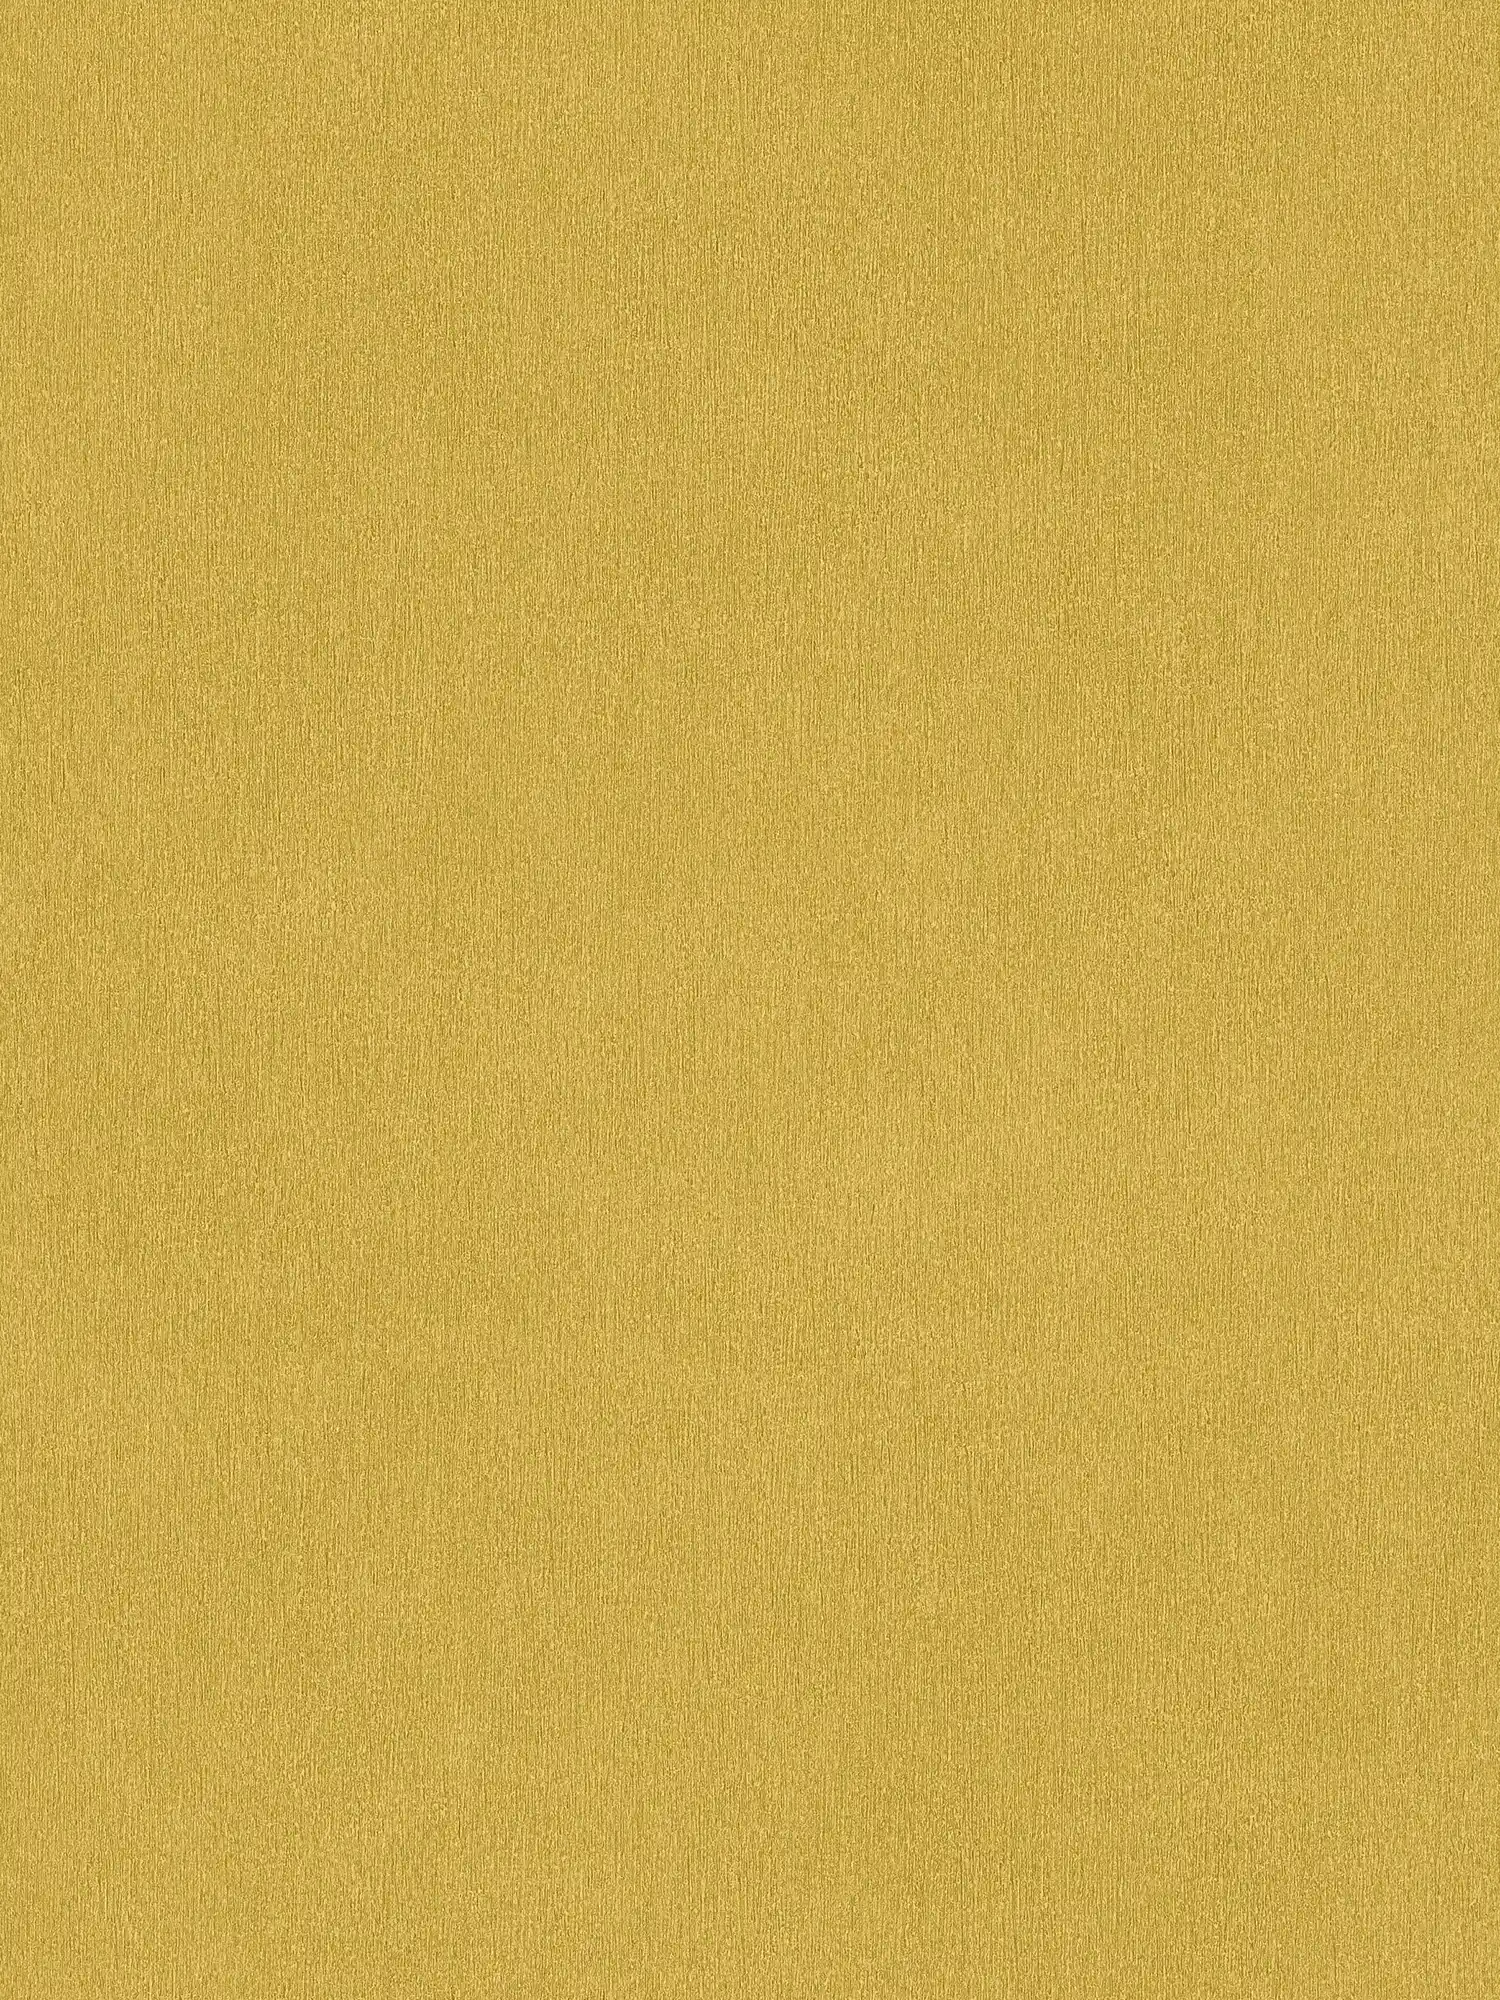 Papel pintado amarillo liso con estructura de color, liso y seda mate
